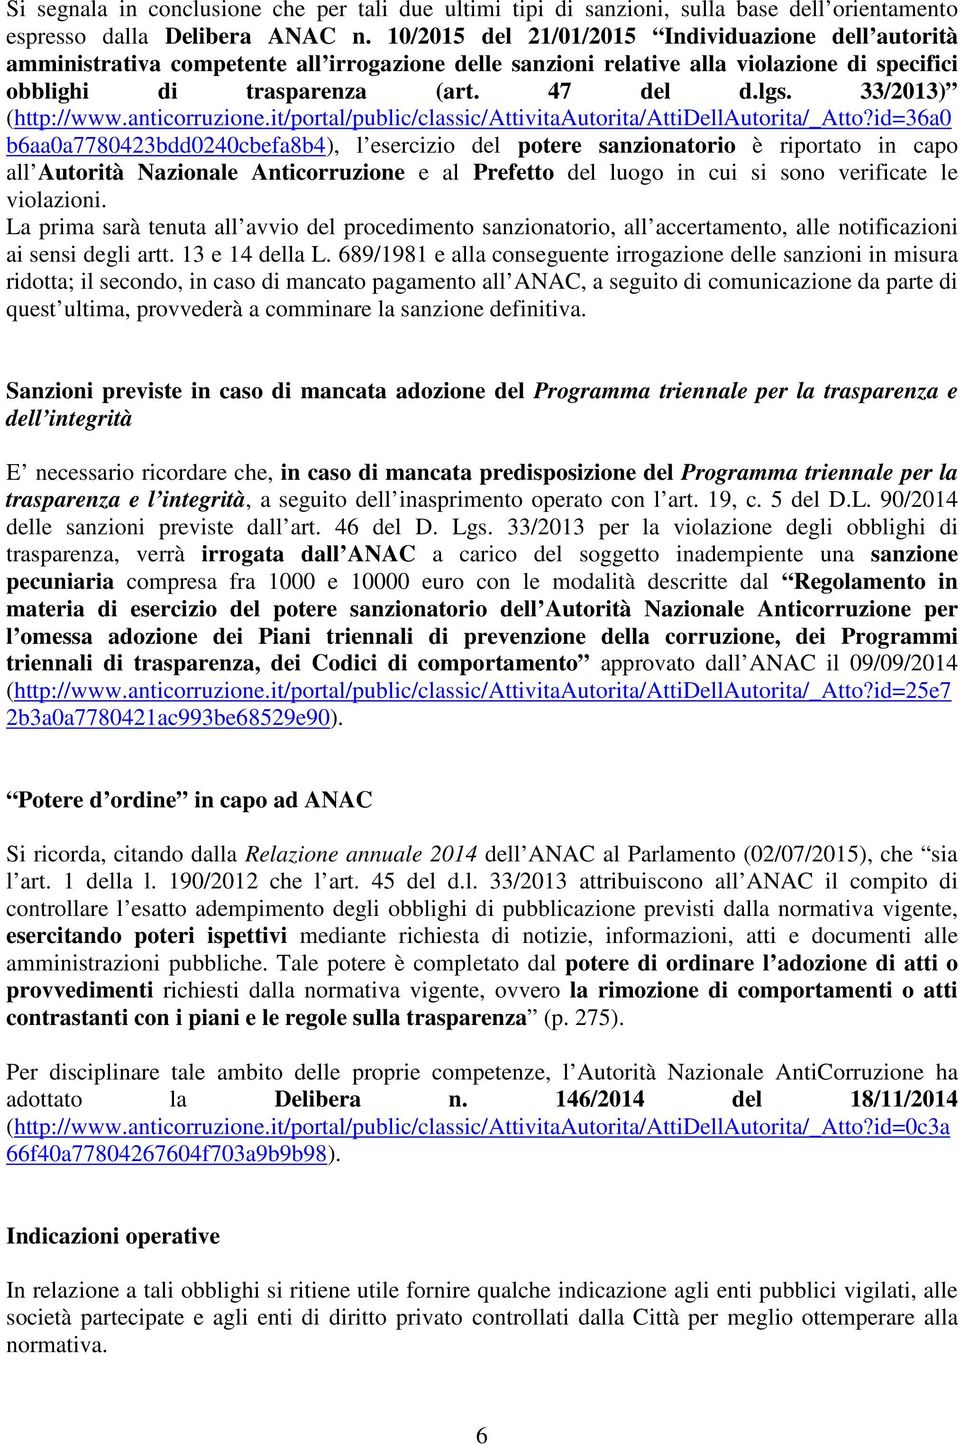 33/2013) (http://www.anticorruzione.it/portal/public/classic/attivitaautorita/attidellautorita/_atto?